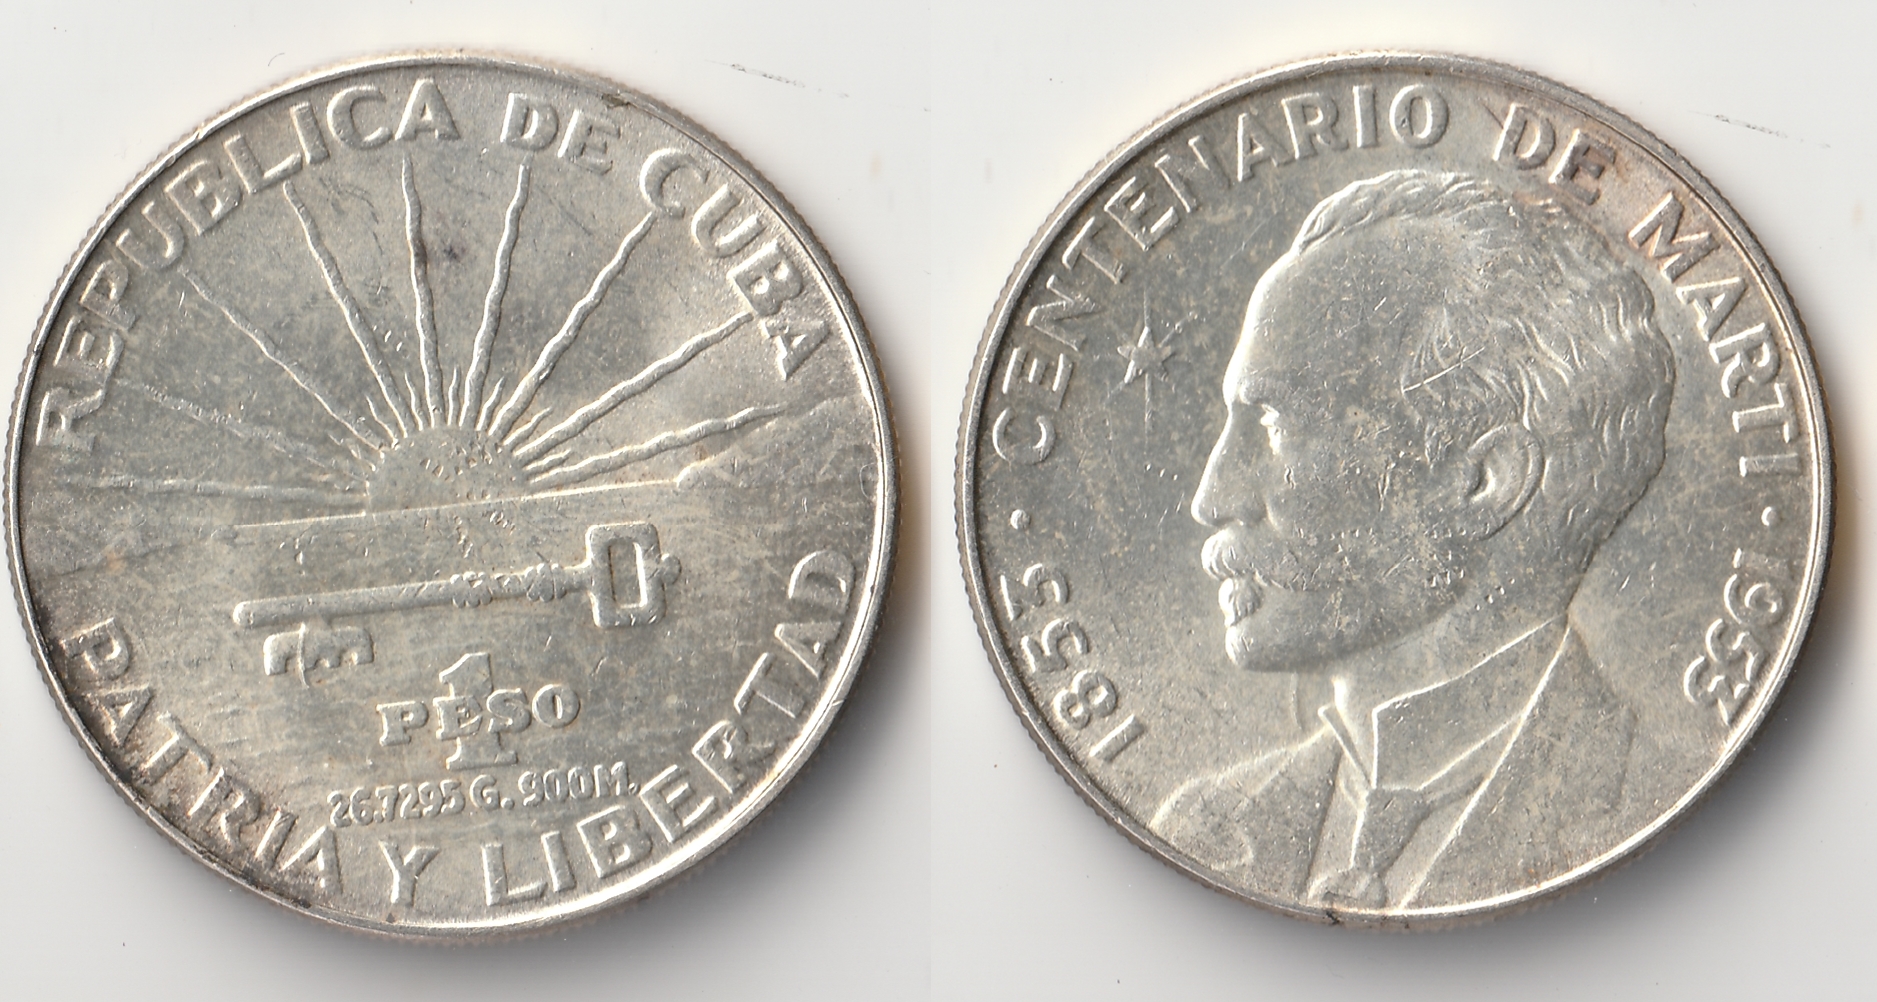 1953 cuba peso.jpg